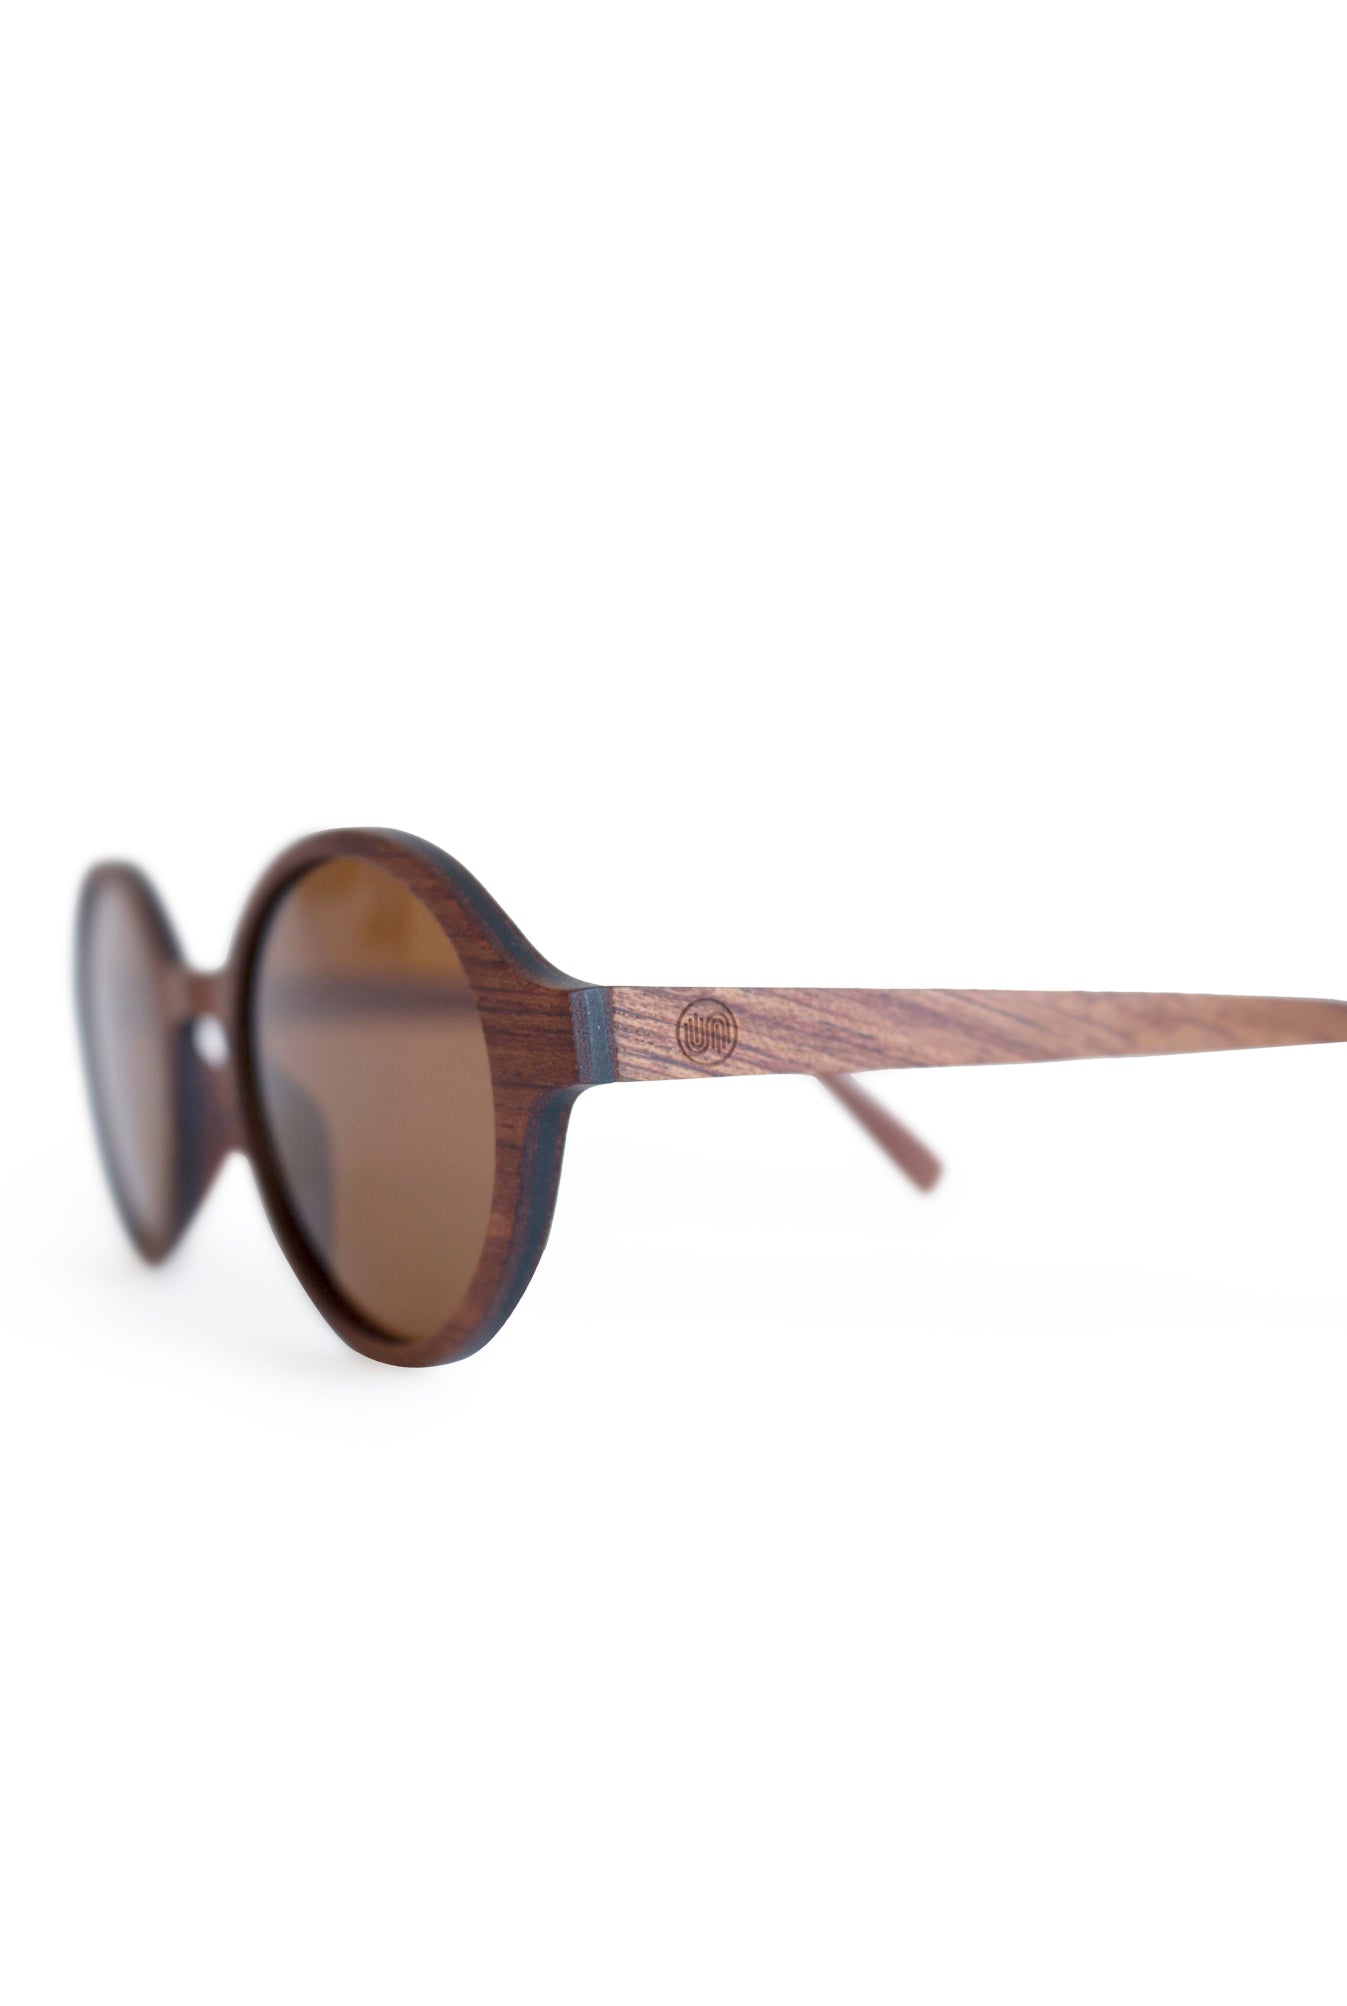 Rosewood Natural Wood Sunglasses